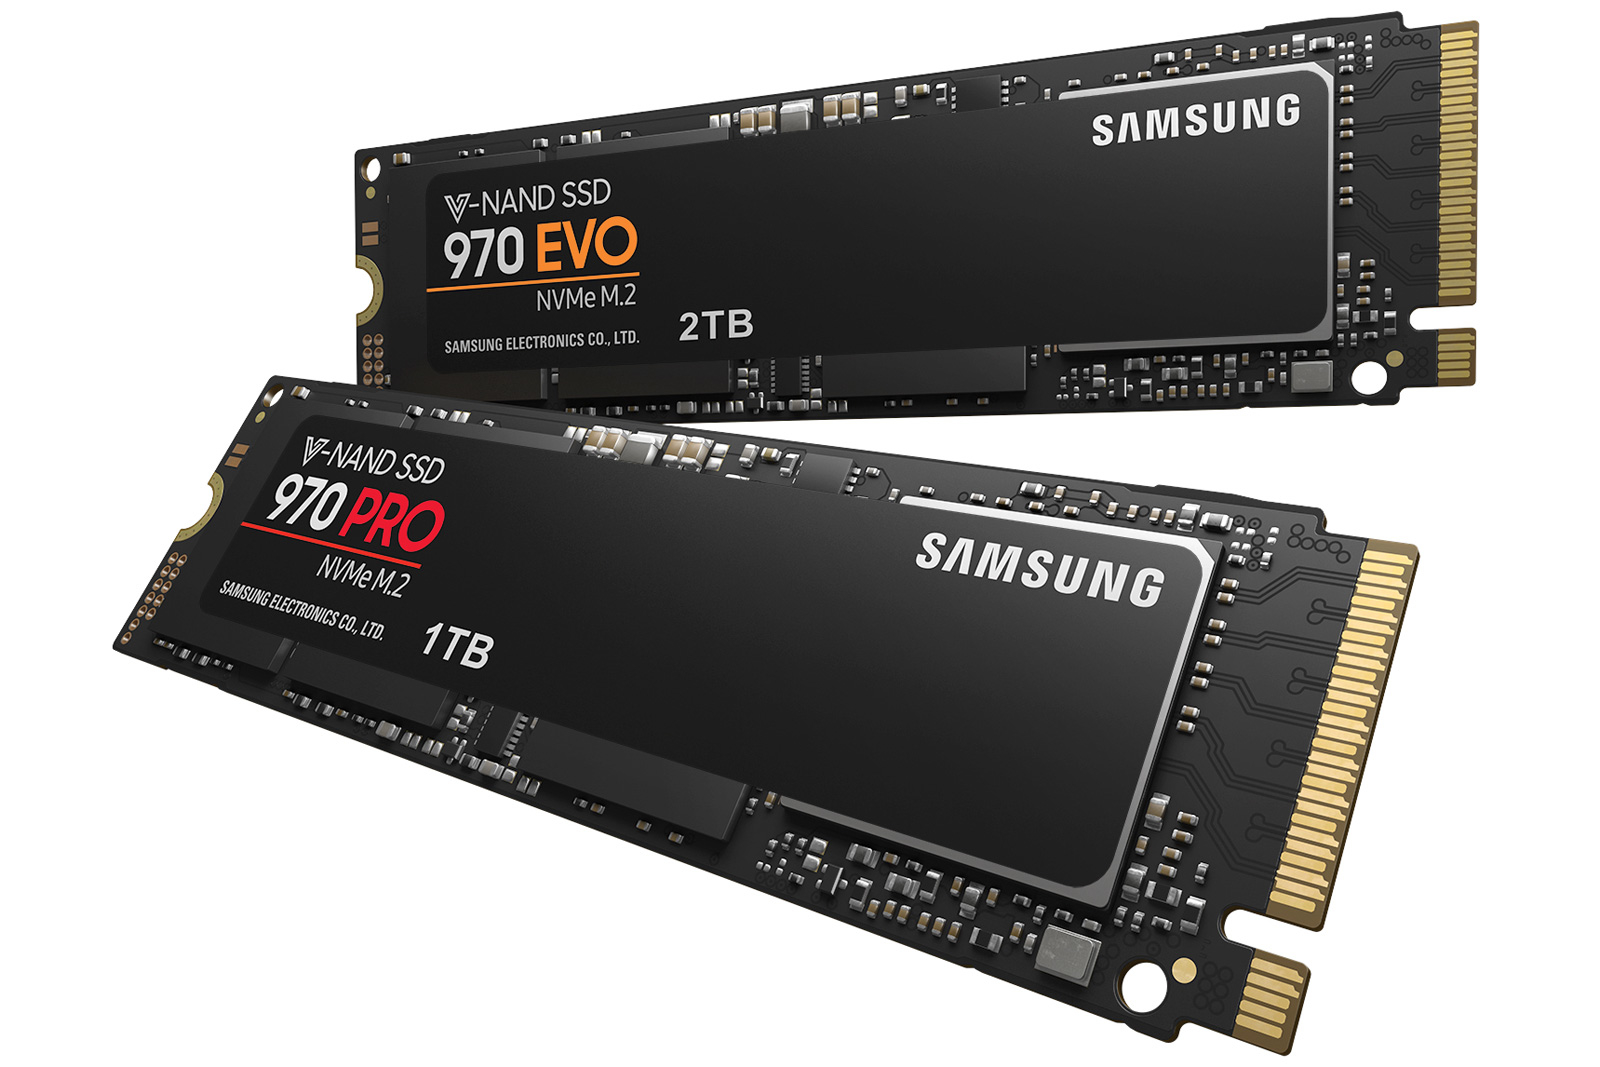 Cặp đôi siêu ổ cứng Samsung 970 EVO và Samsung 970 PRO ra mắt 7/5/2018 -  Tuanphong.vn